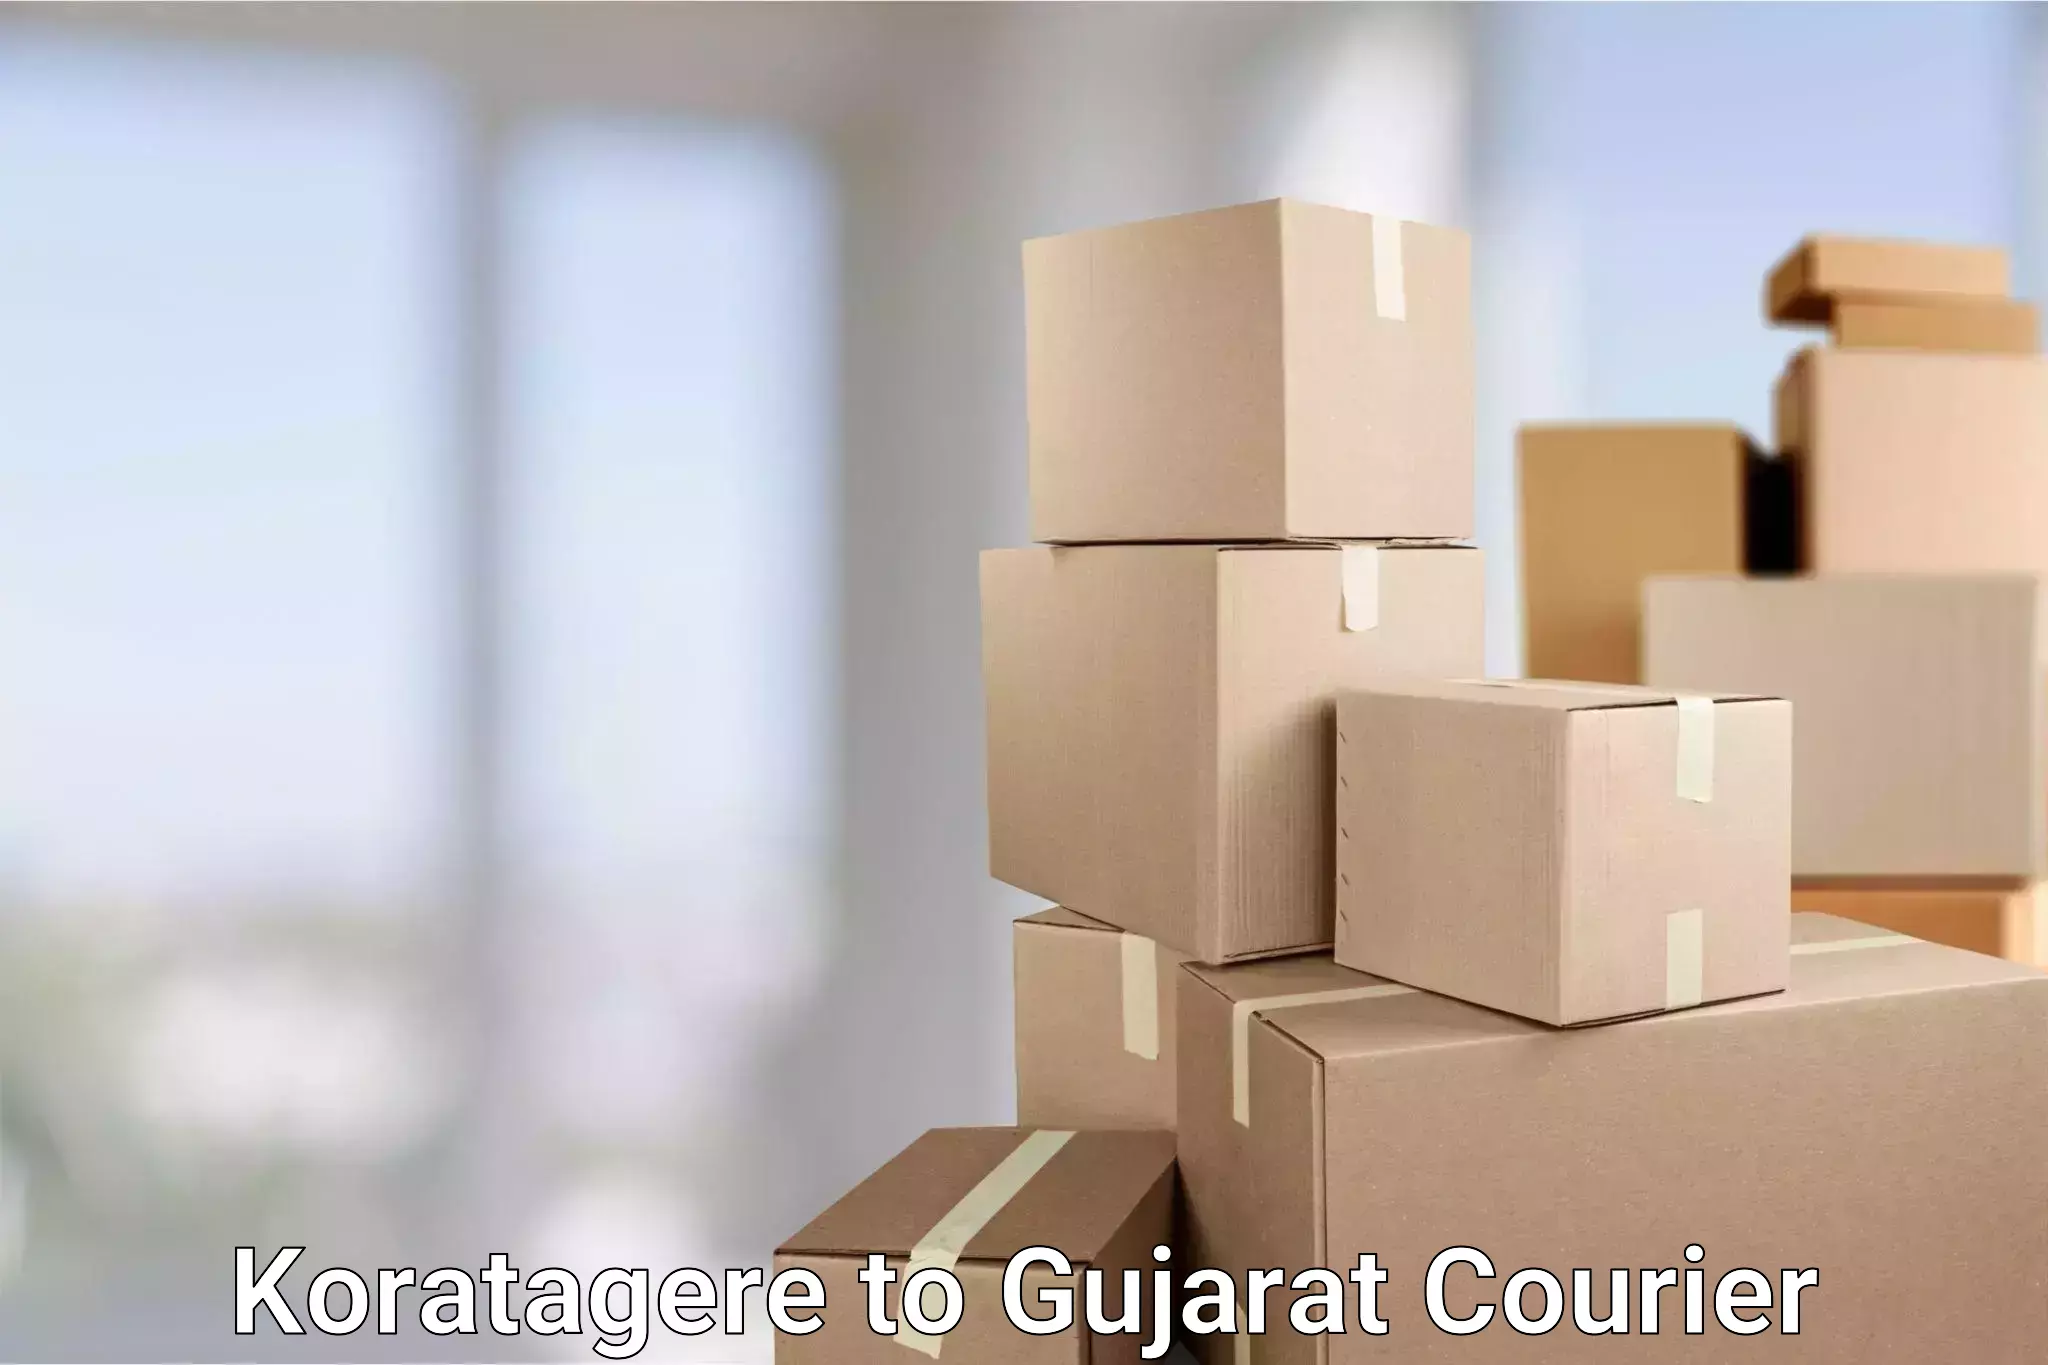 Affordable parcel service Koratagere to Gujarat